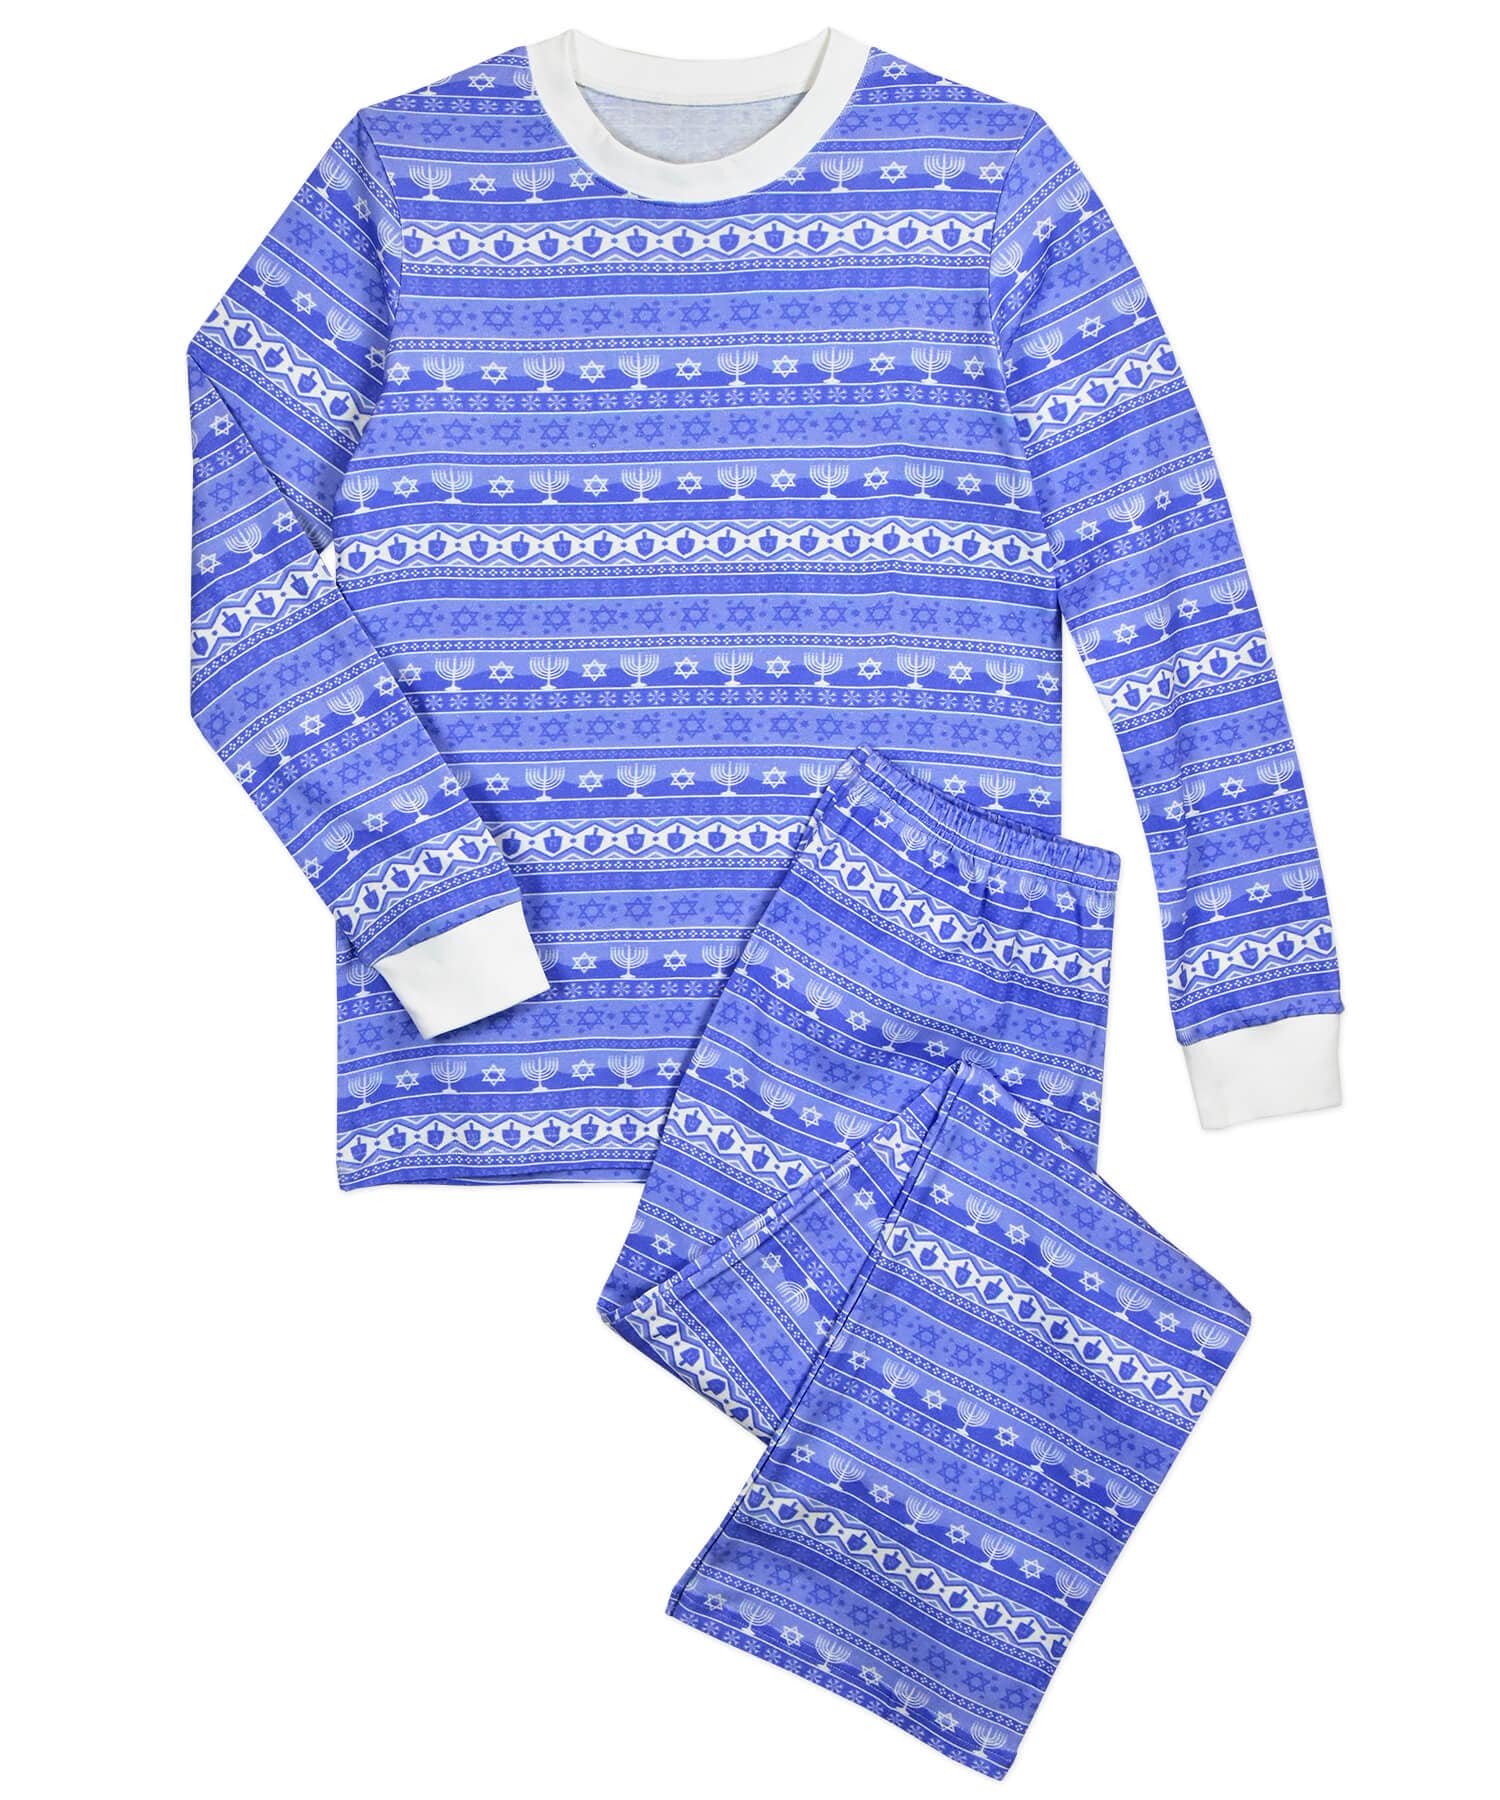 Sara's Prints Pajamas Hanukkah Fair Isle Pajamas, Adults Unisex Sizes XS - XL